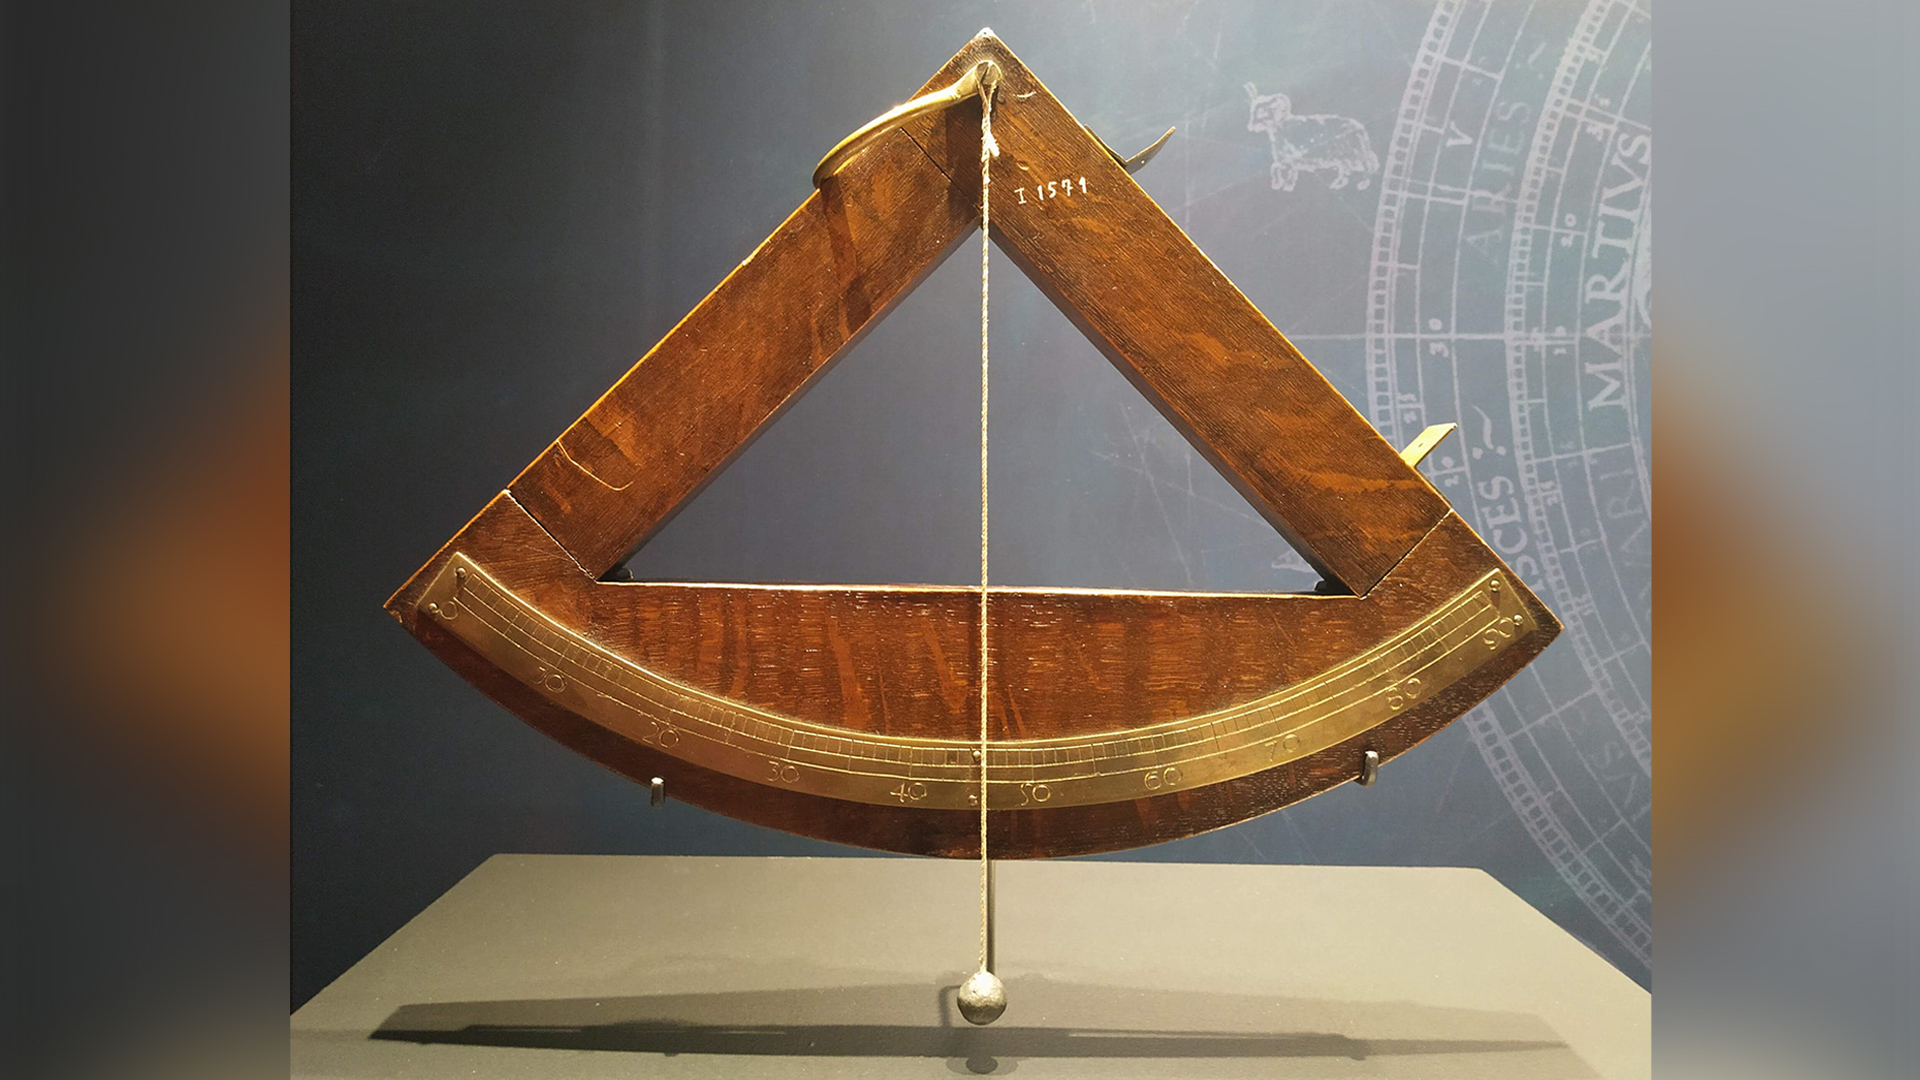 Construcción de un cuadrante. Instrumentos de navegación en el siglo XV